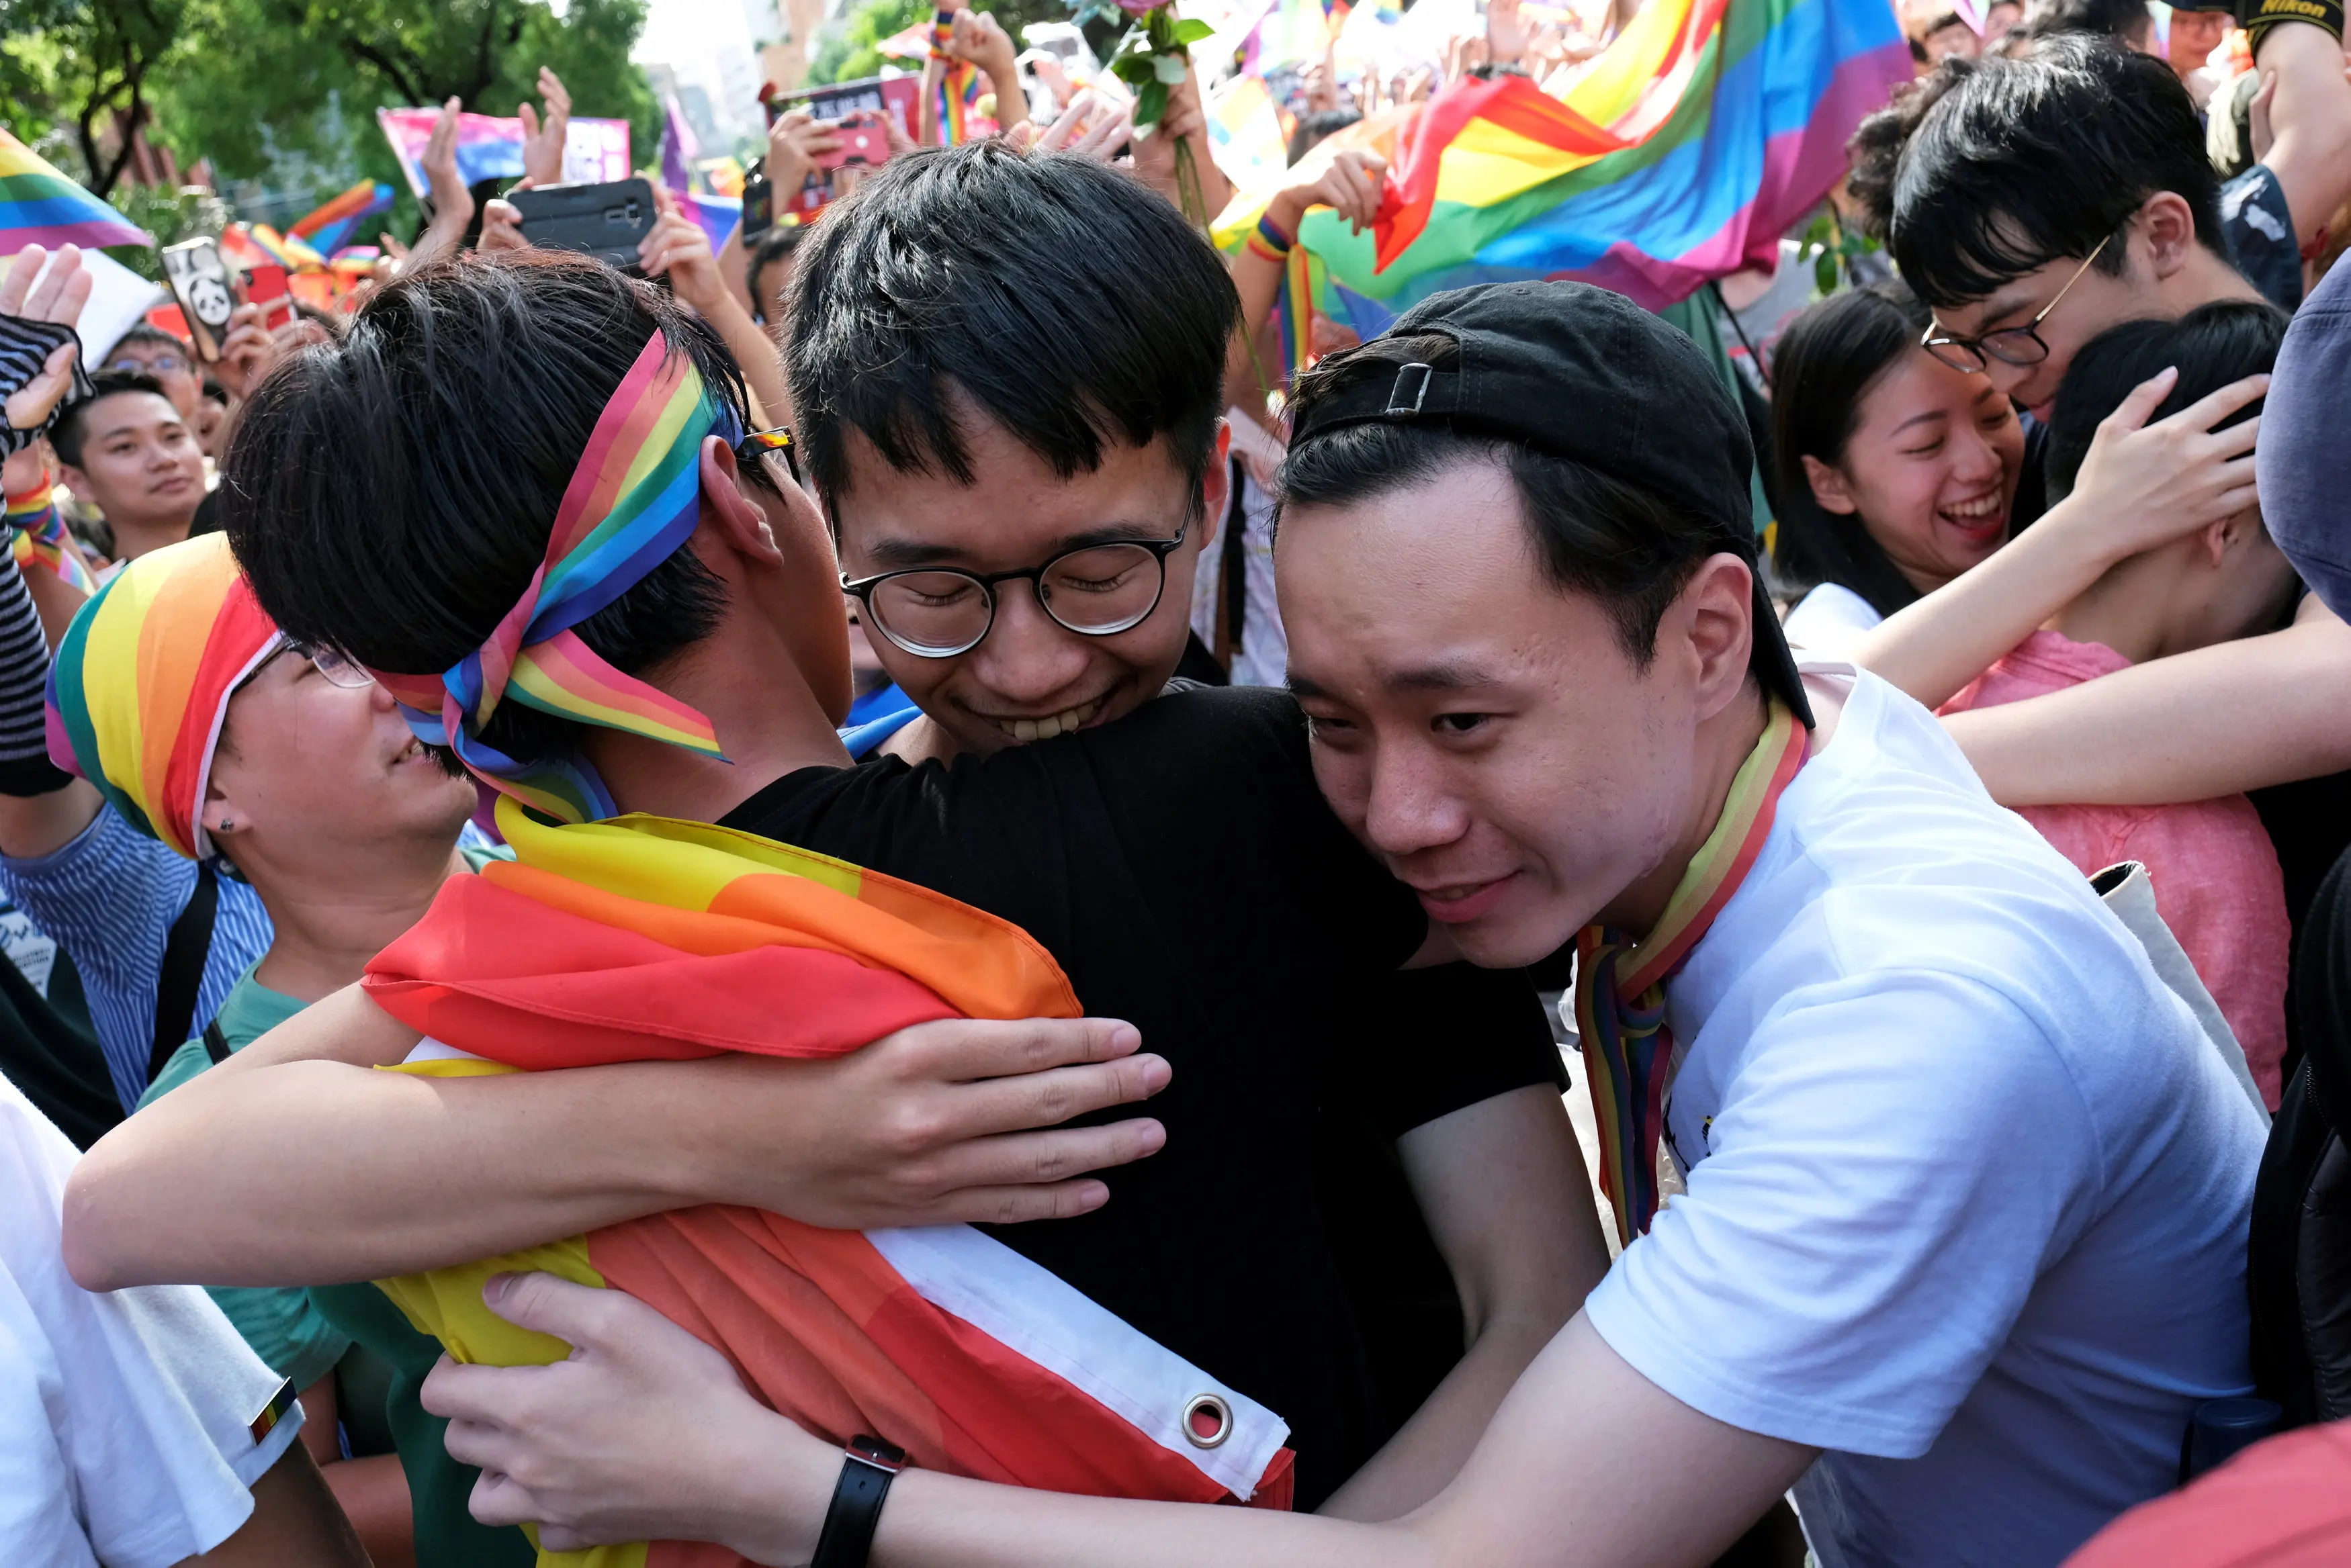 פעילים לזכויות להט"ב חוגגים את ההצבעה ההיסטורית בפרלמנט בטייוואן לאישור נישואים חד-מיניים ב-17 במאי 2019